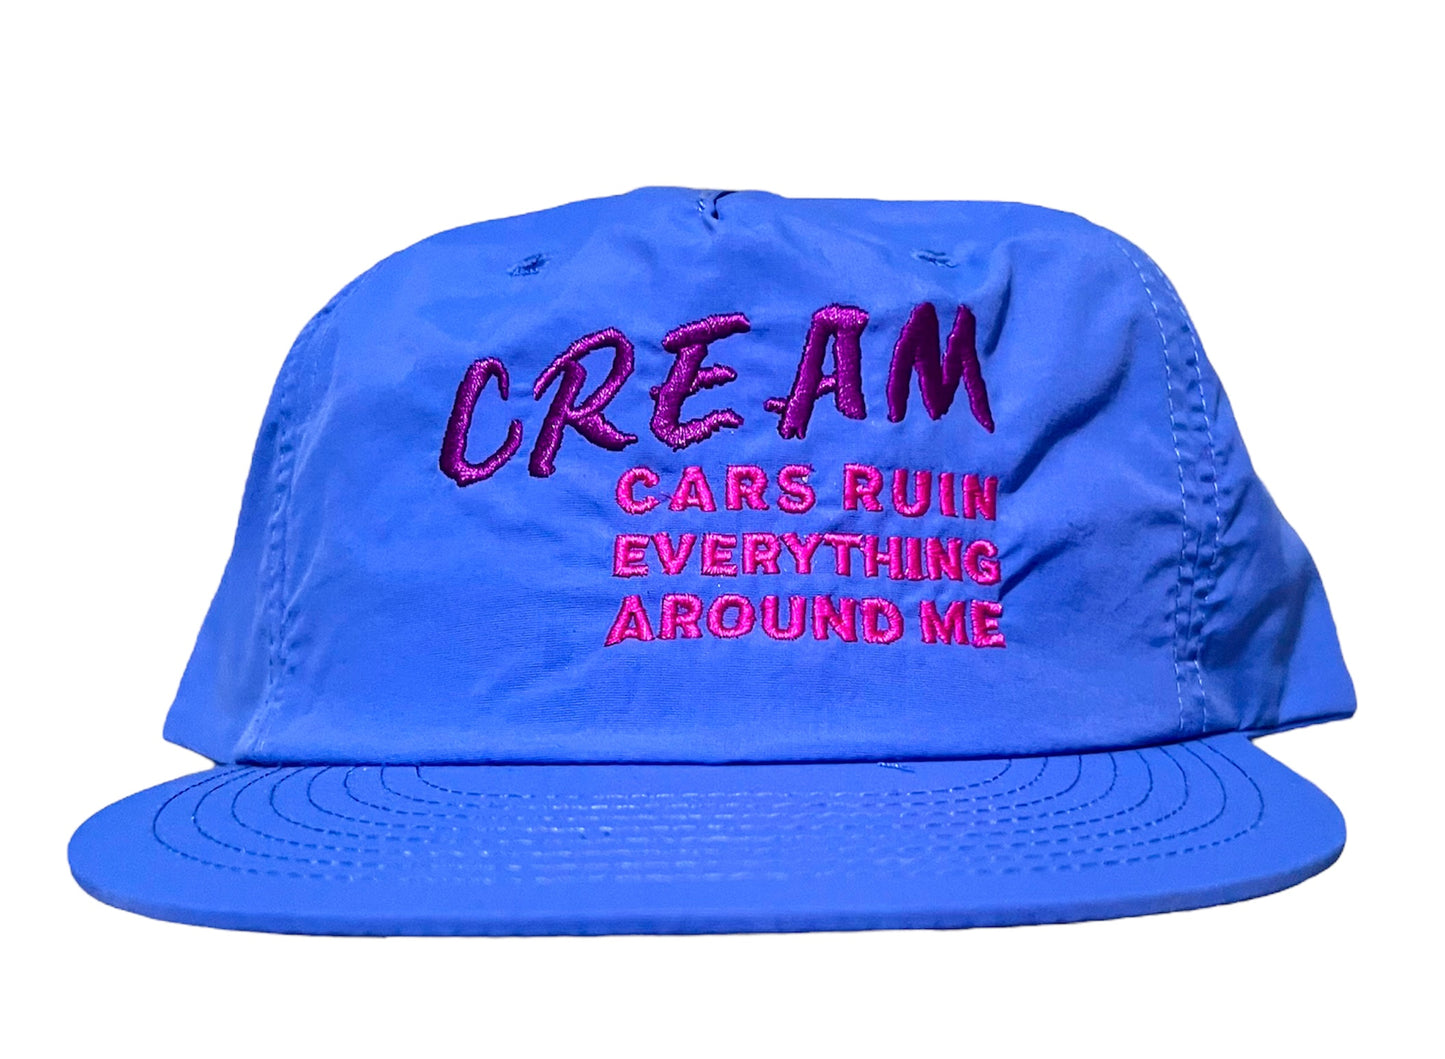 CREAM Hat